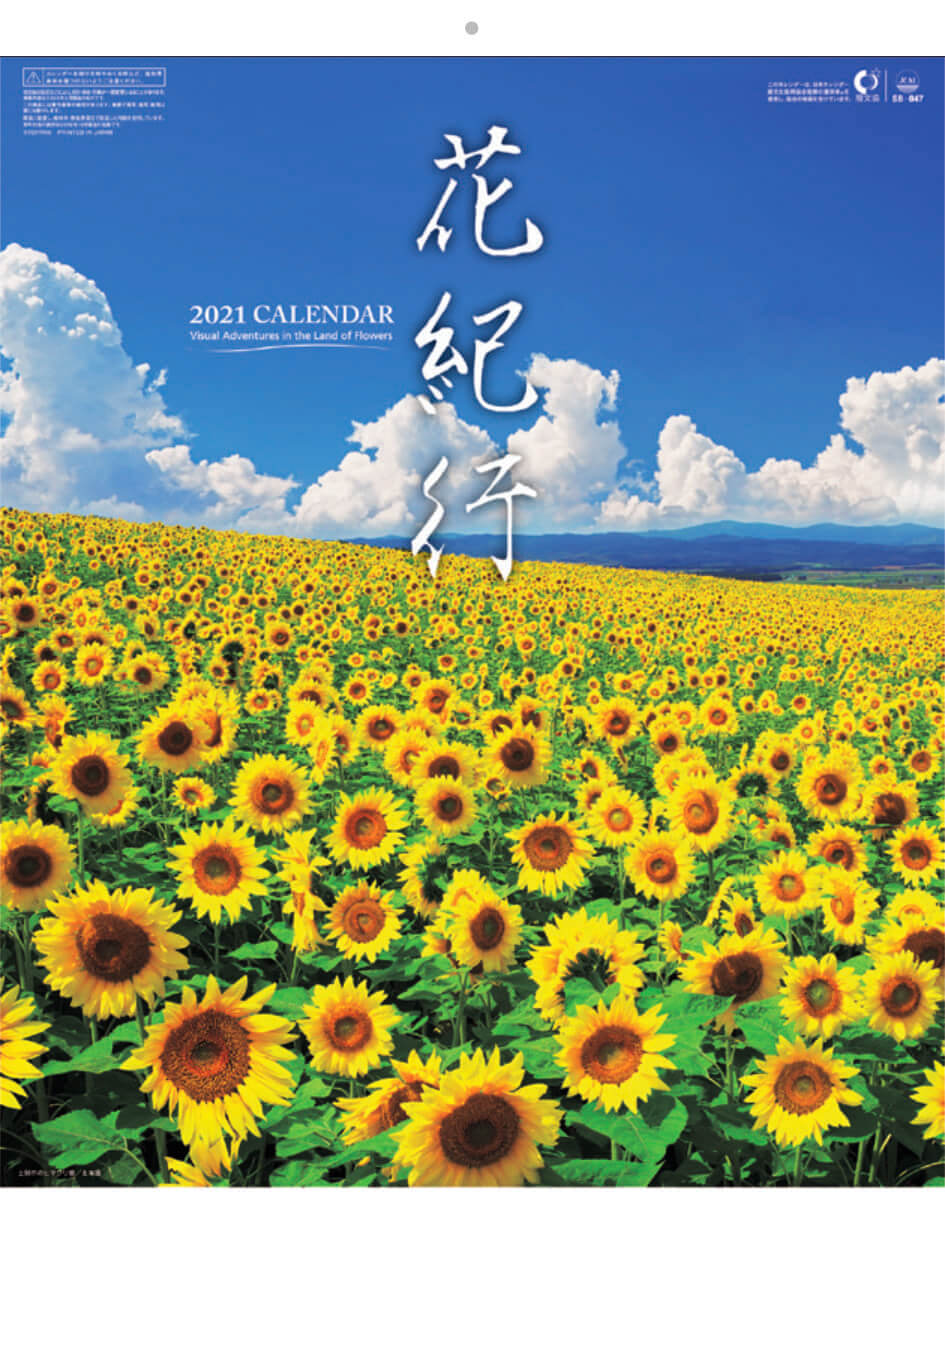 Sb 047 花紀行 21年カレンダー日本各地のお花のスポット カレンダーの通販サイト E カレンダー Com 1部からでも送料無料でお届け